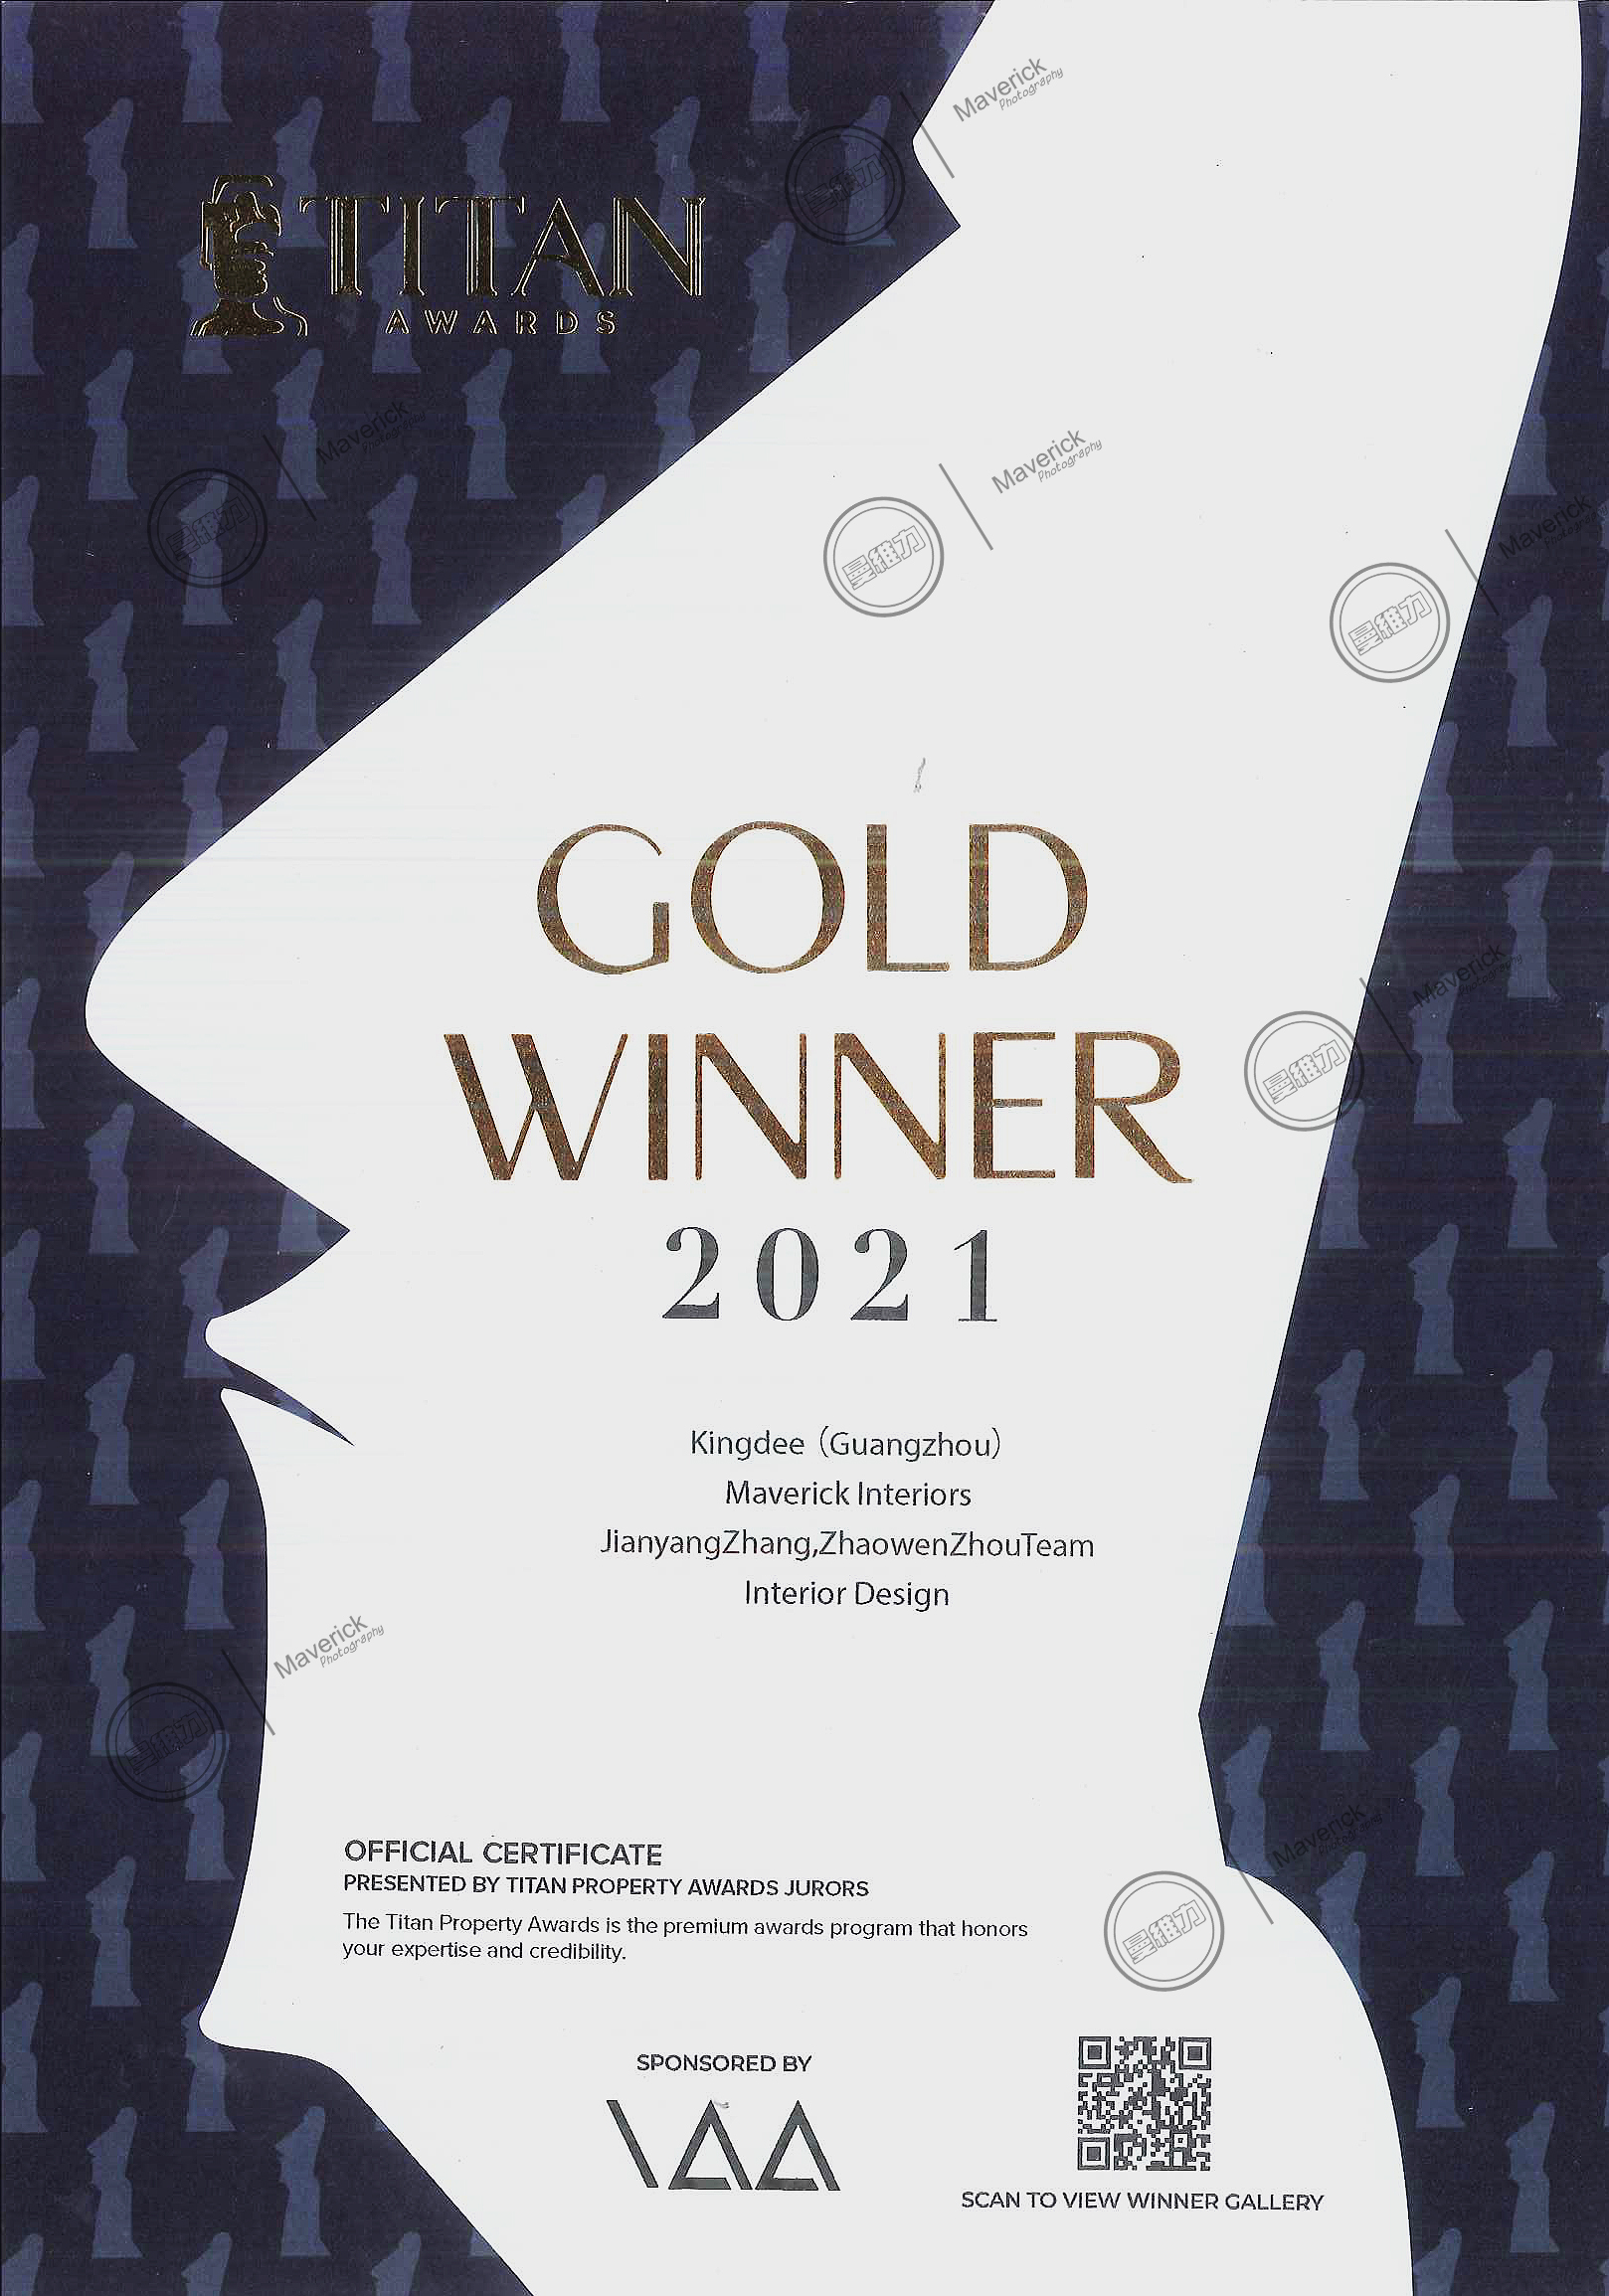 Kingdee won the TITAN Award Gold Award 2021